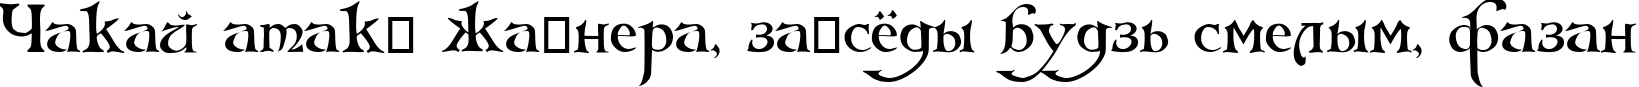 Пример написания шрифтом Arlekino текста на белорусском